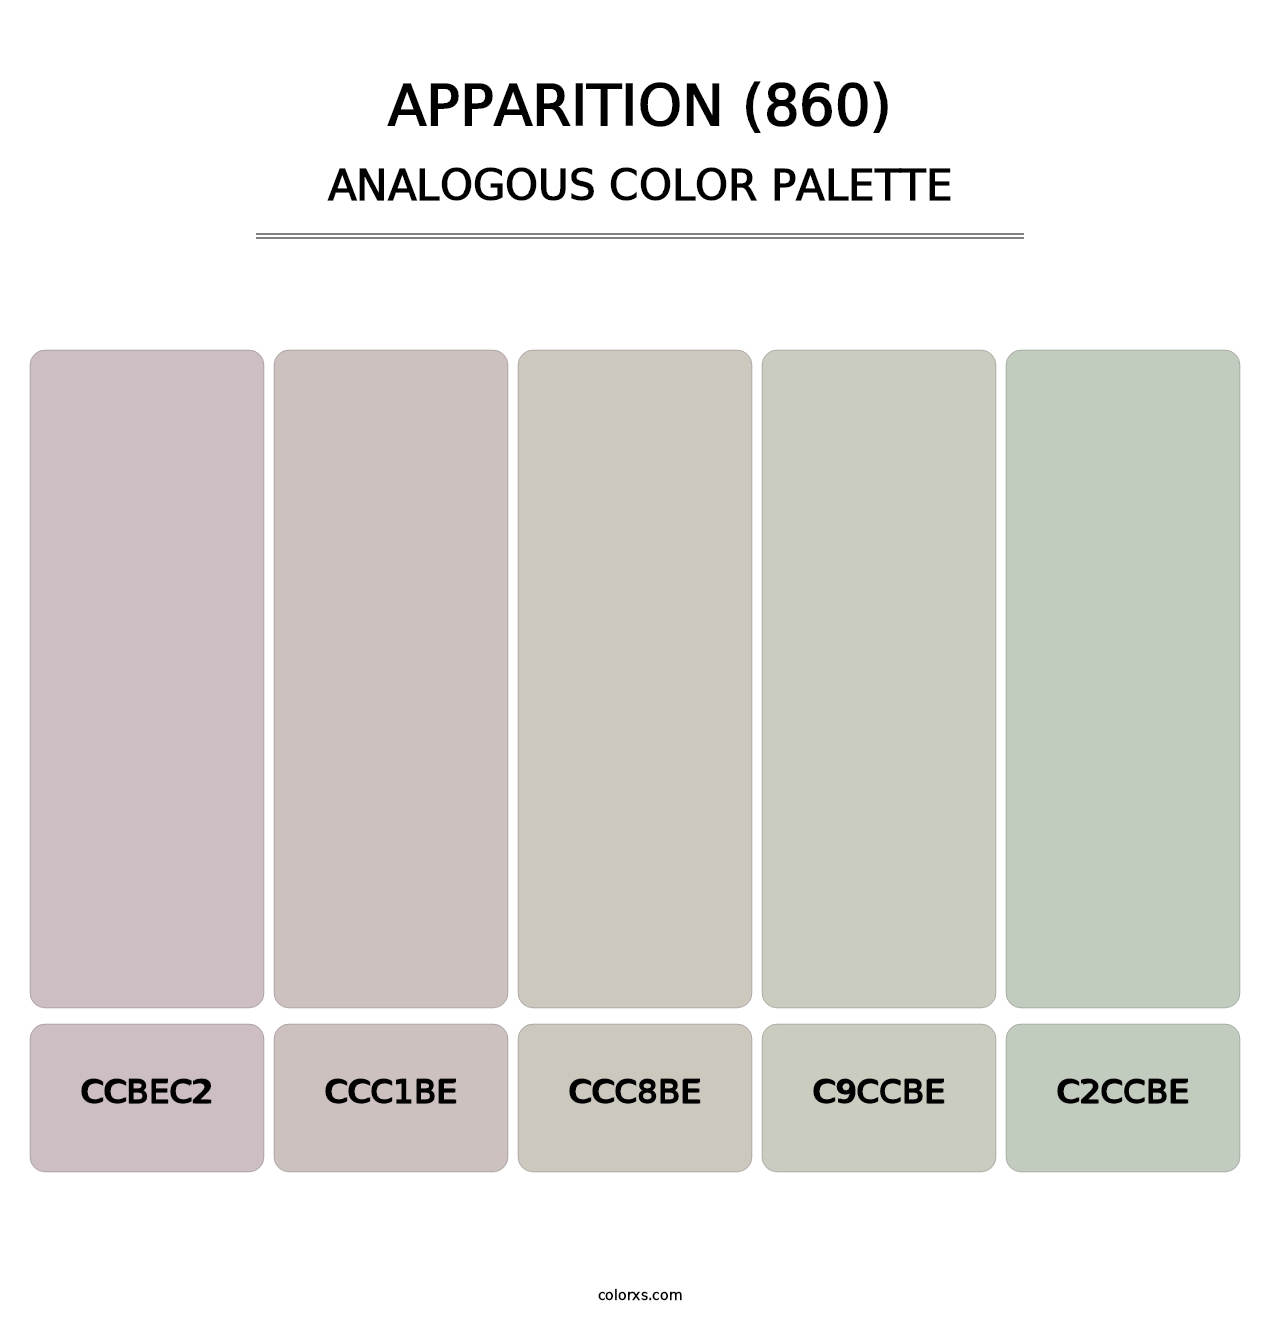 Apparition (860) - Analogous Color Palette